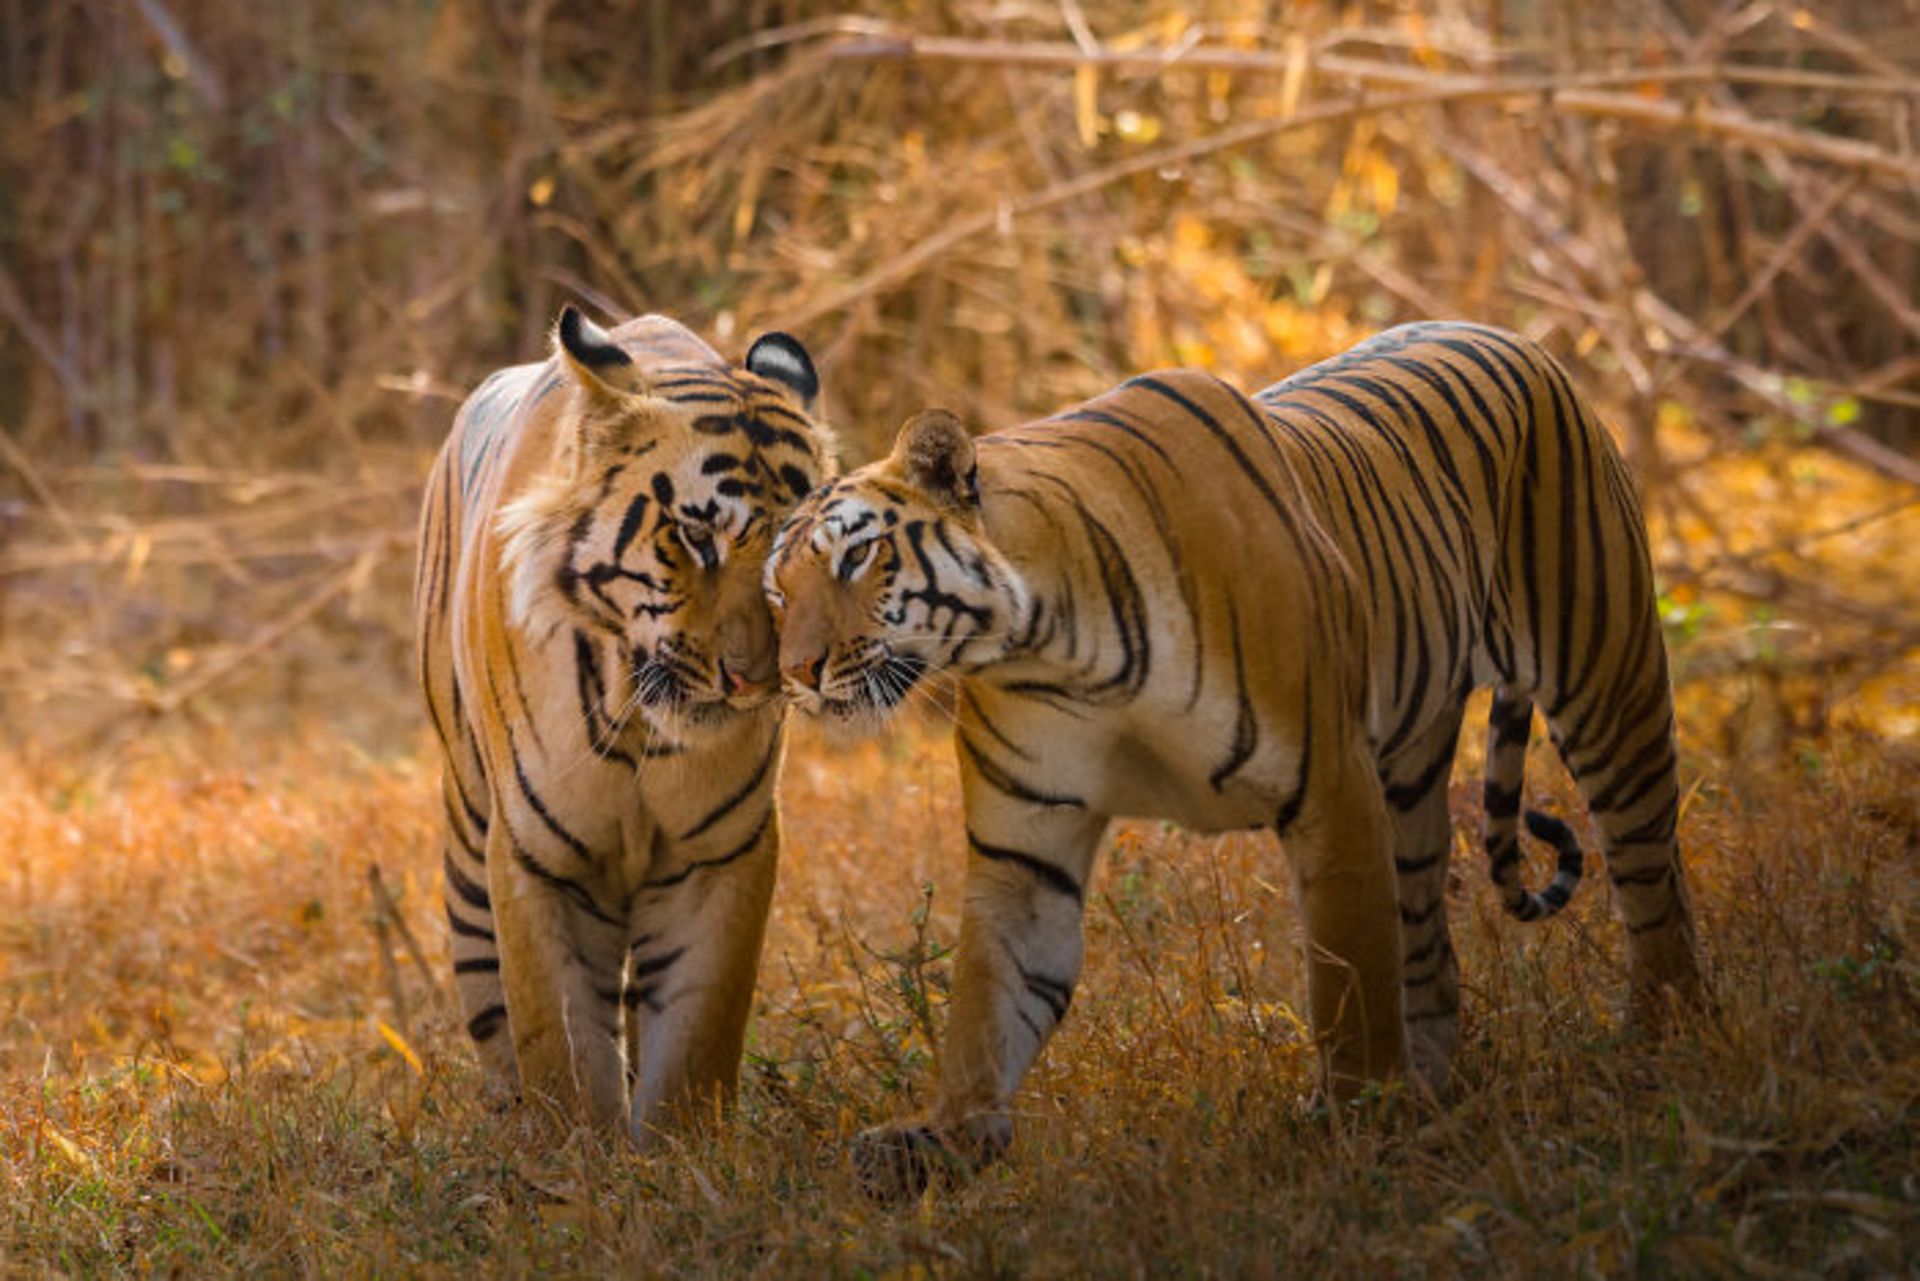 زوج ببر بنگال عاشق در حیات وحش